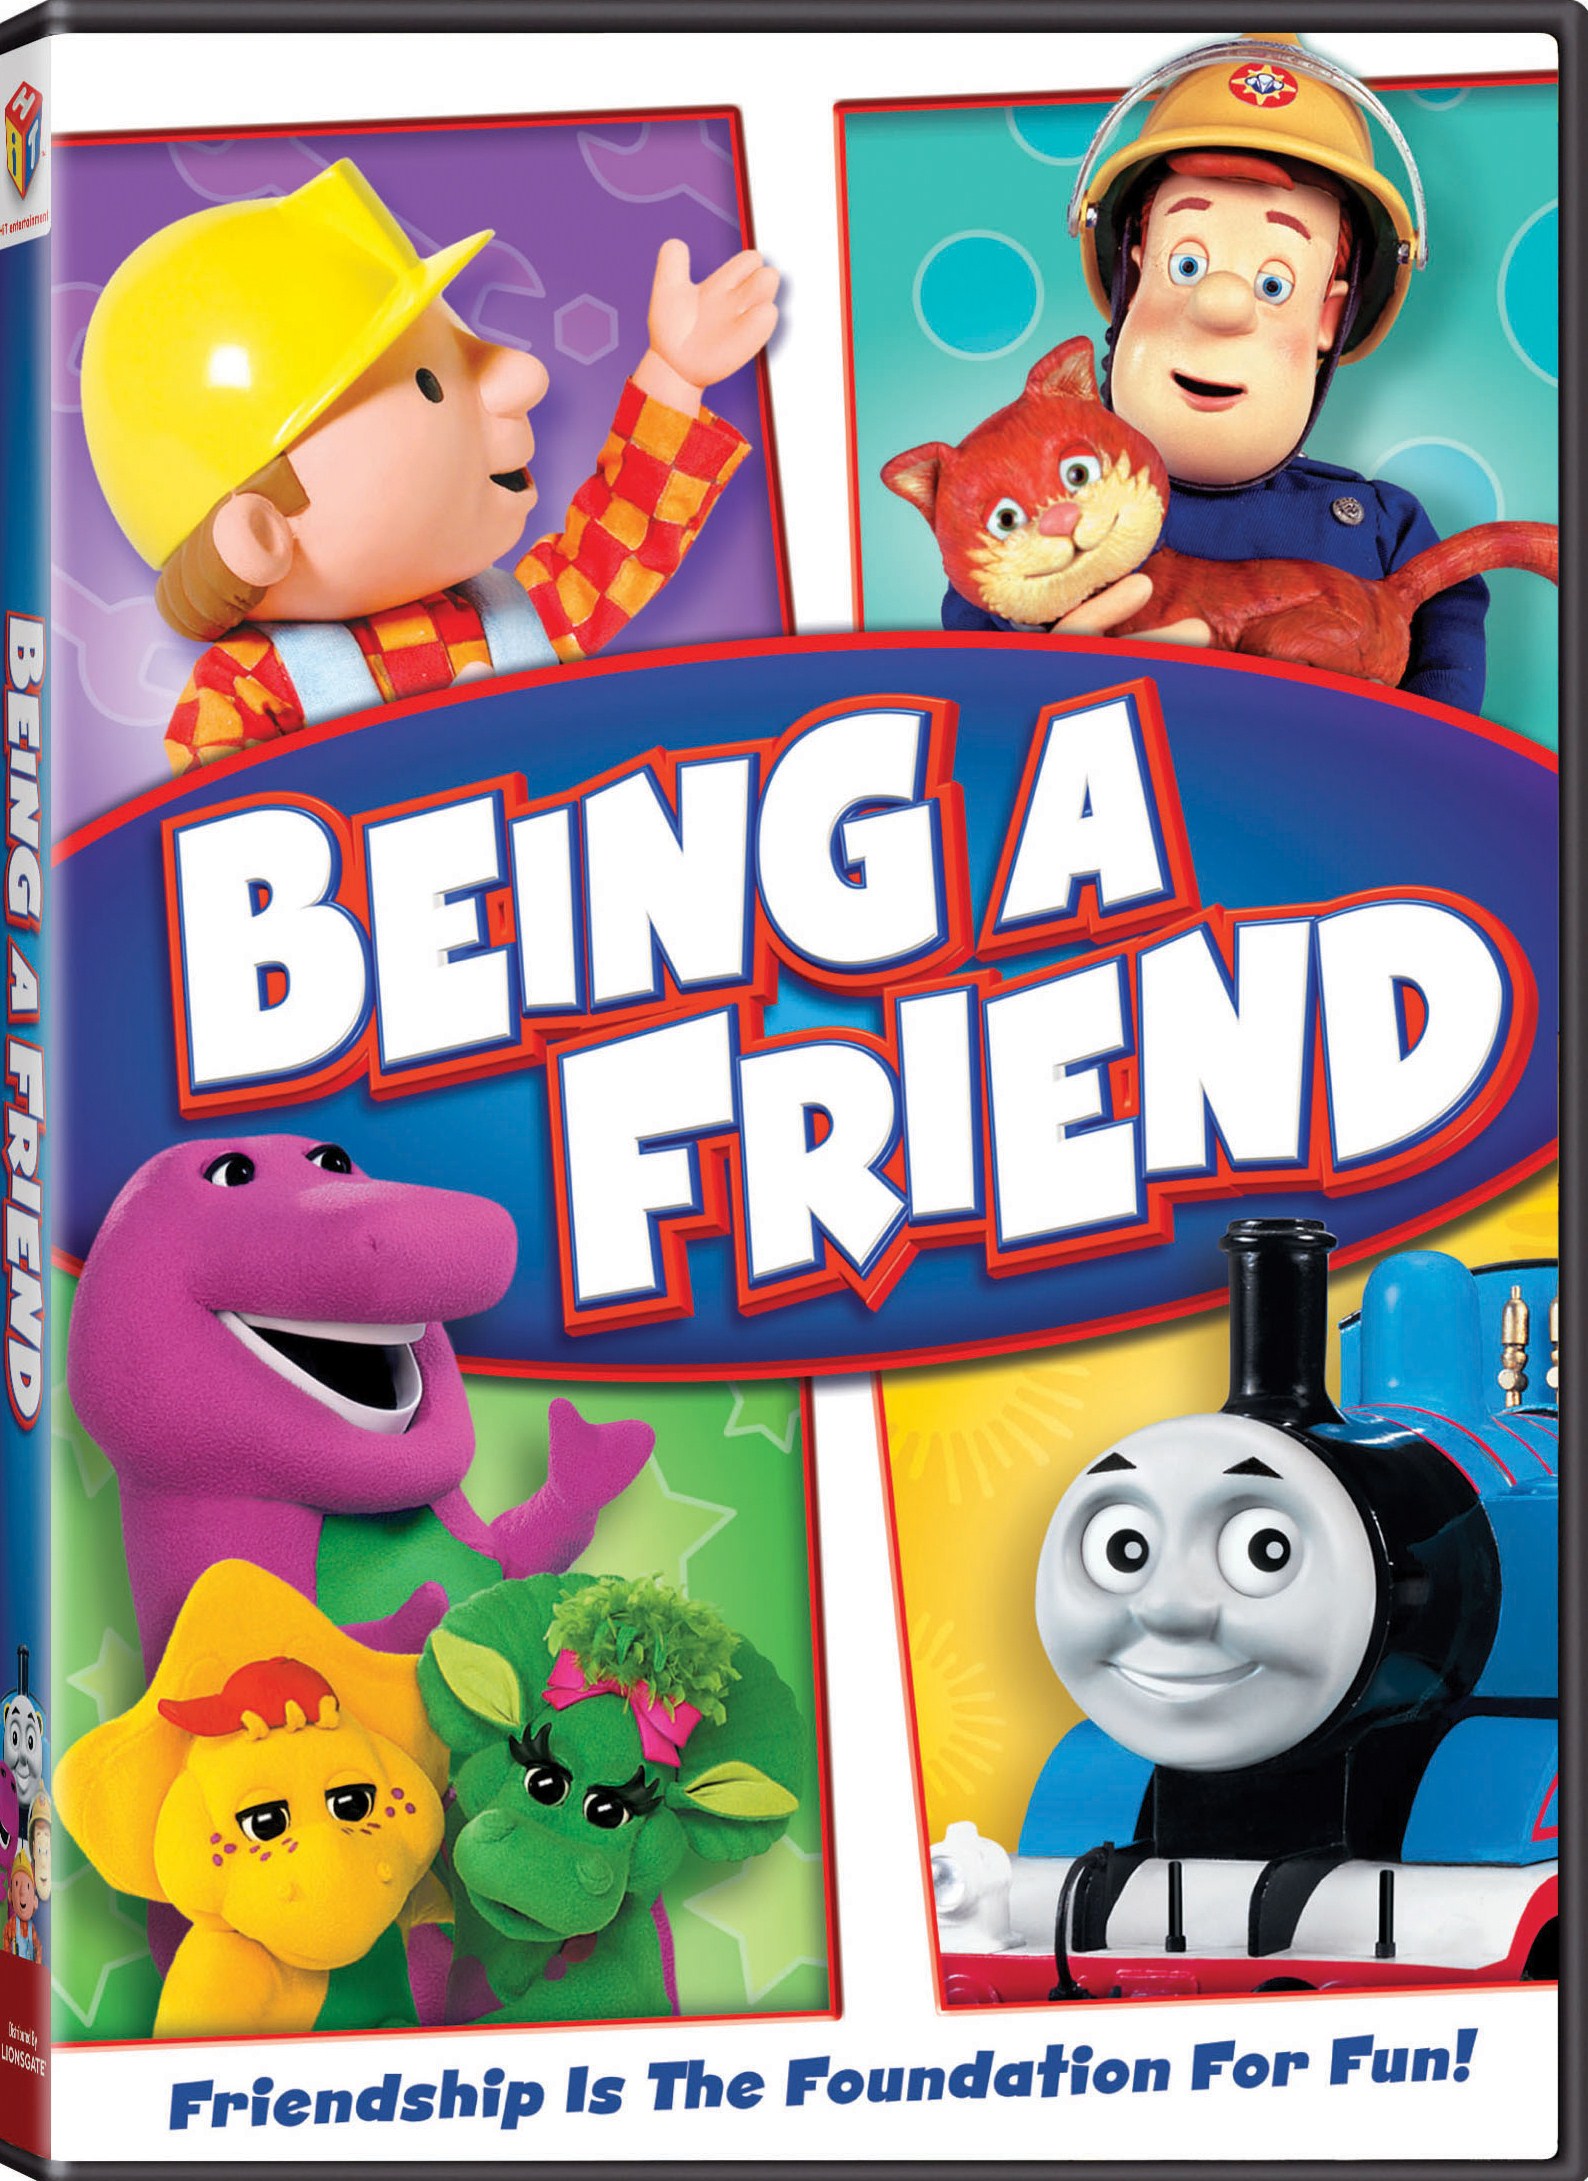 Hit Favorites: Friend 4-Pack [DVD]